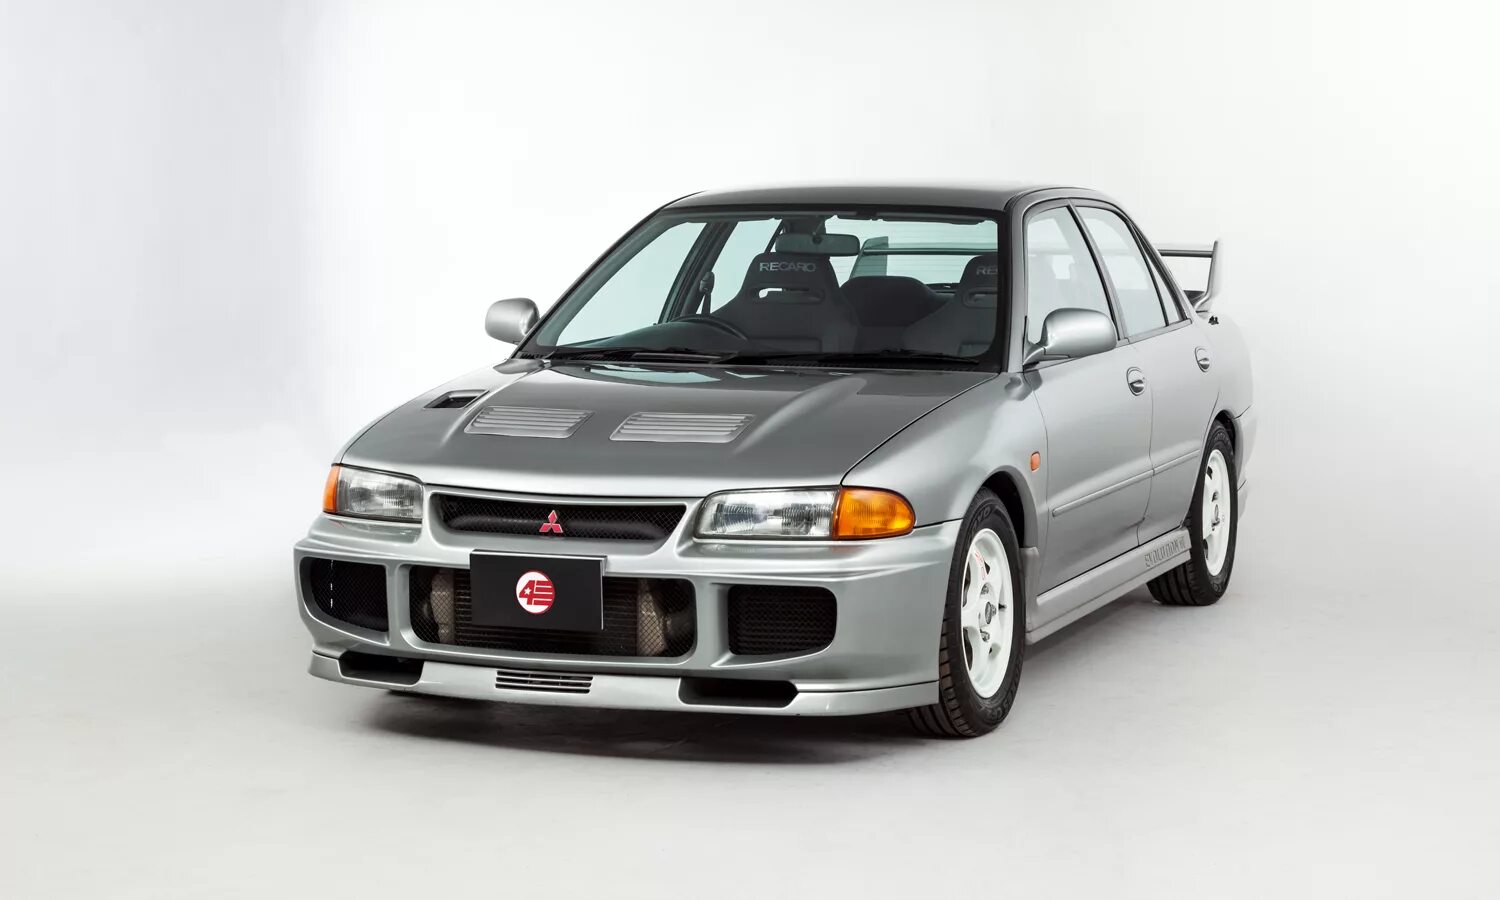 Mitsubishi Lancer Evolution 3. Mitsubishi Lancer Evolution 3 GSR. Mitsubishi Lancer Evolution 1995. Mitsubishi Lancer GSR Evolution III (ce9a) 1995.